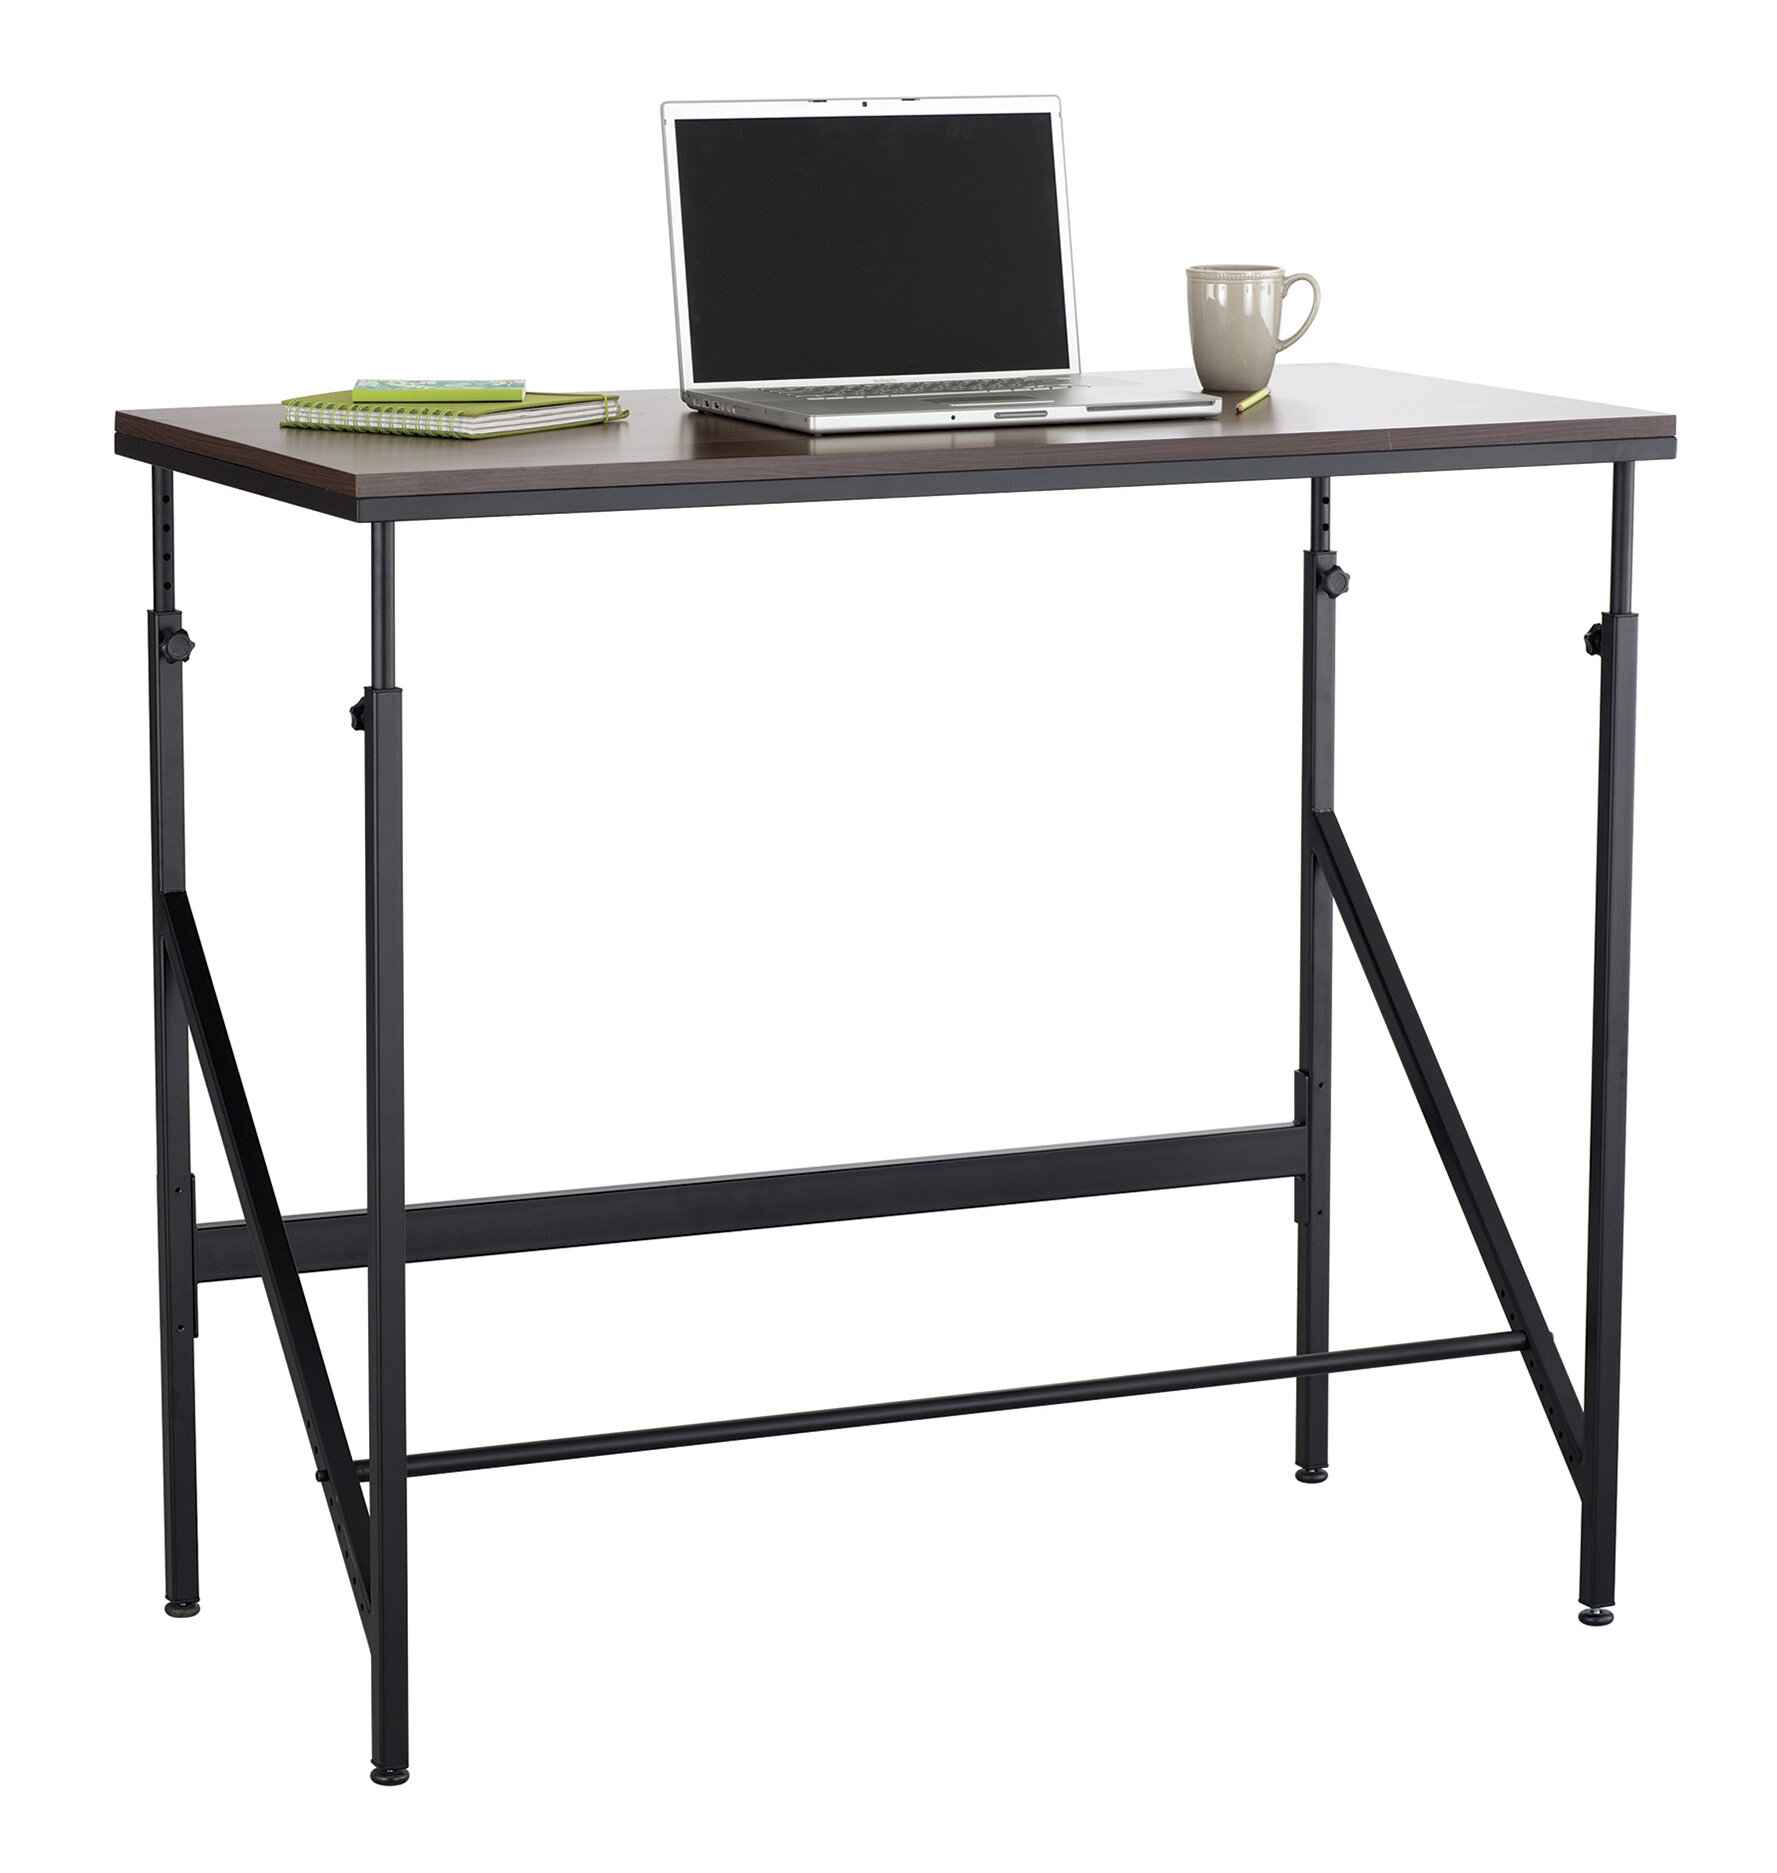 Symple Stuff Vandoren Height Adjustable Standing Desk Reviews